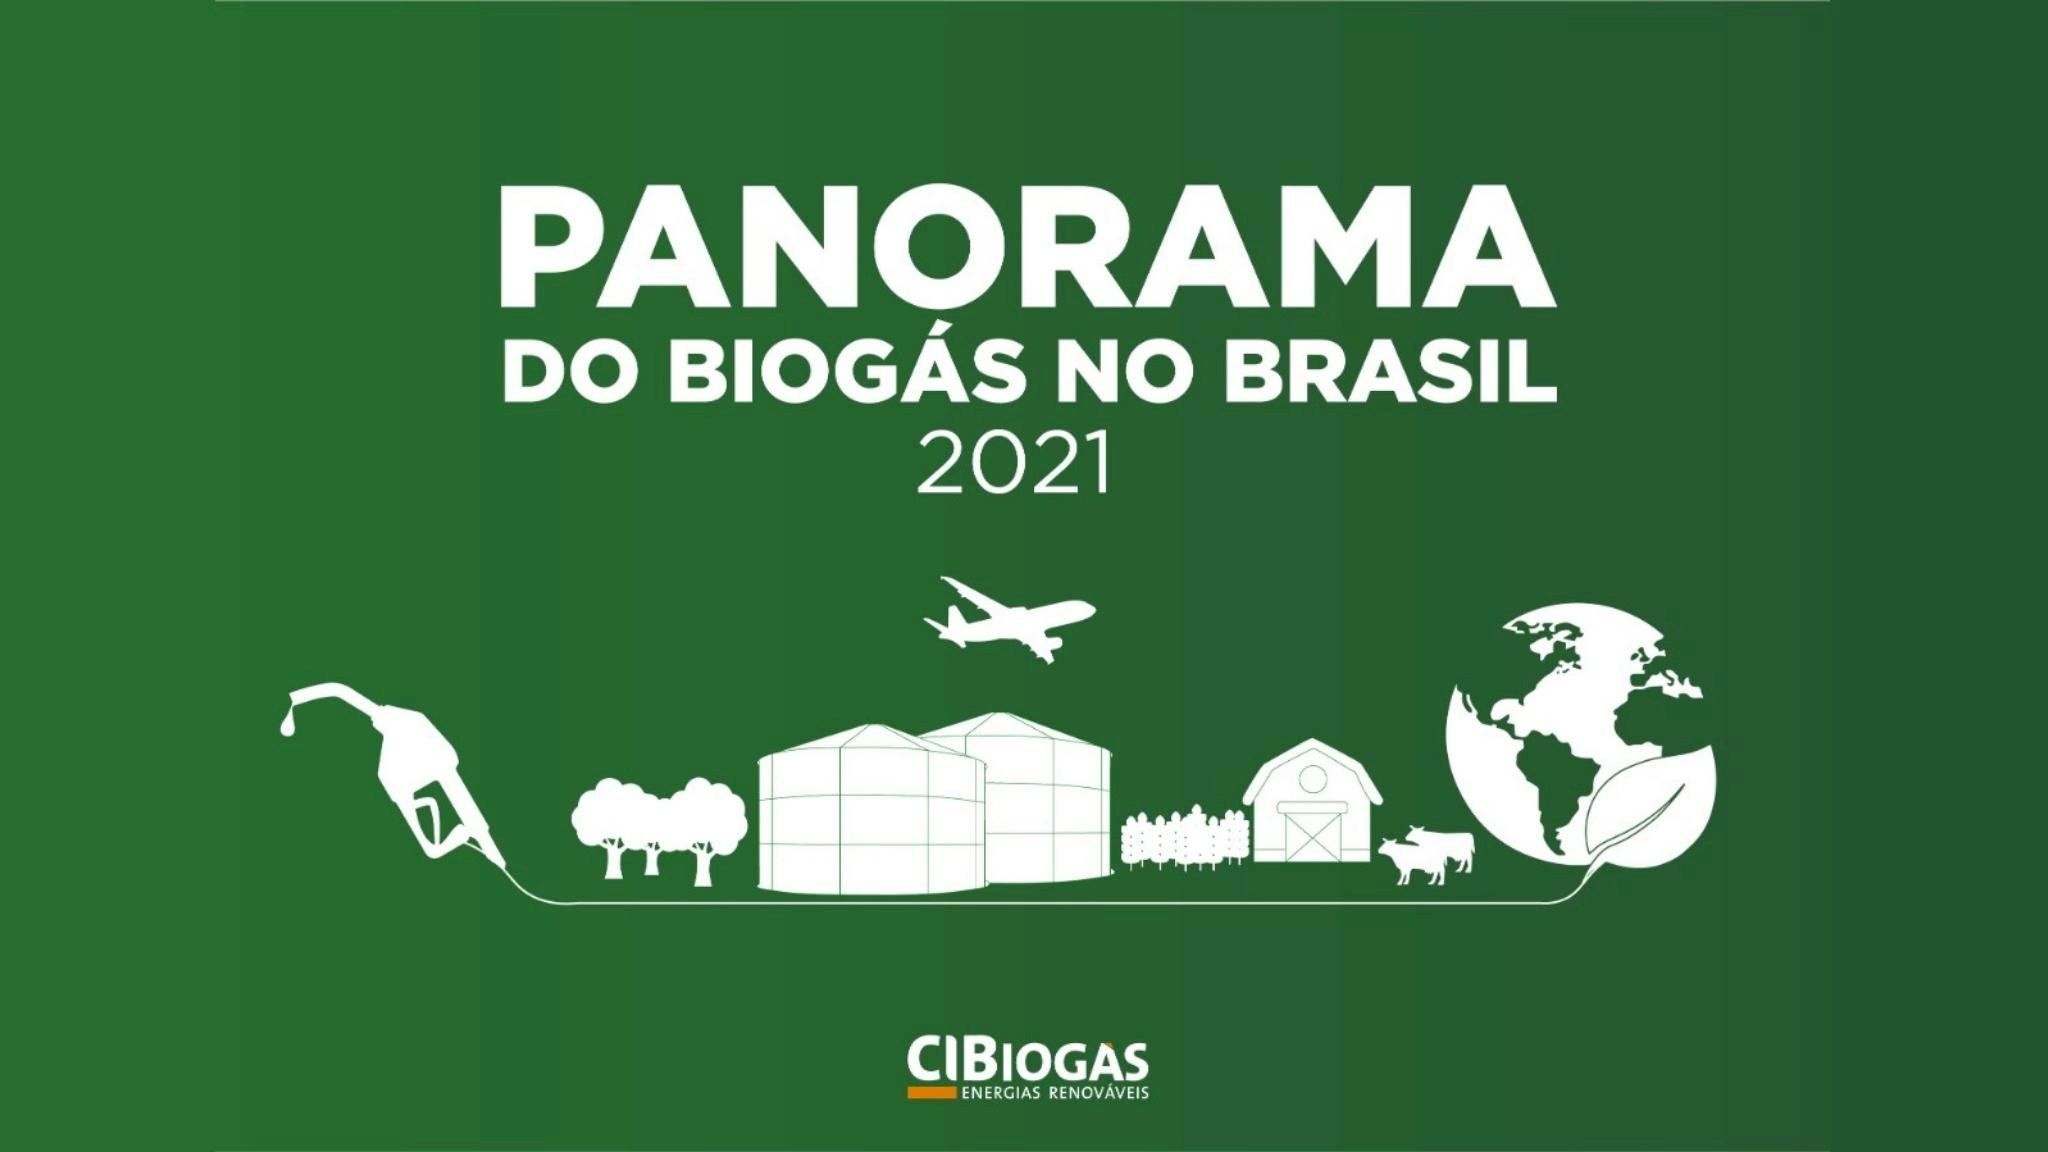 Novo Panorama do Biogás no Brasil 2021